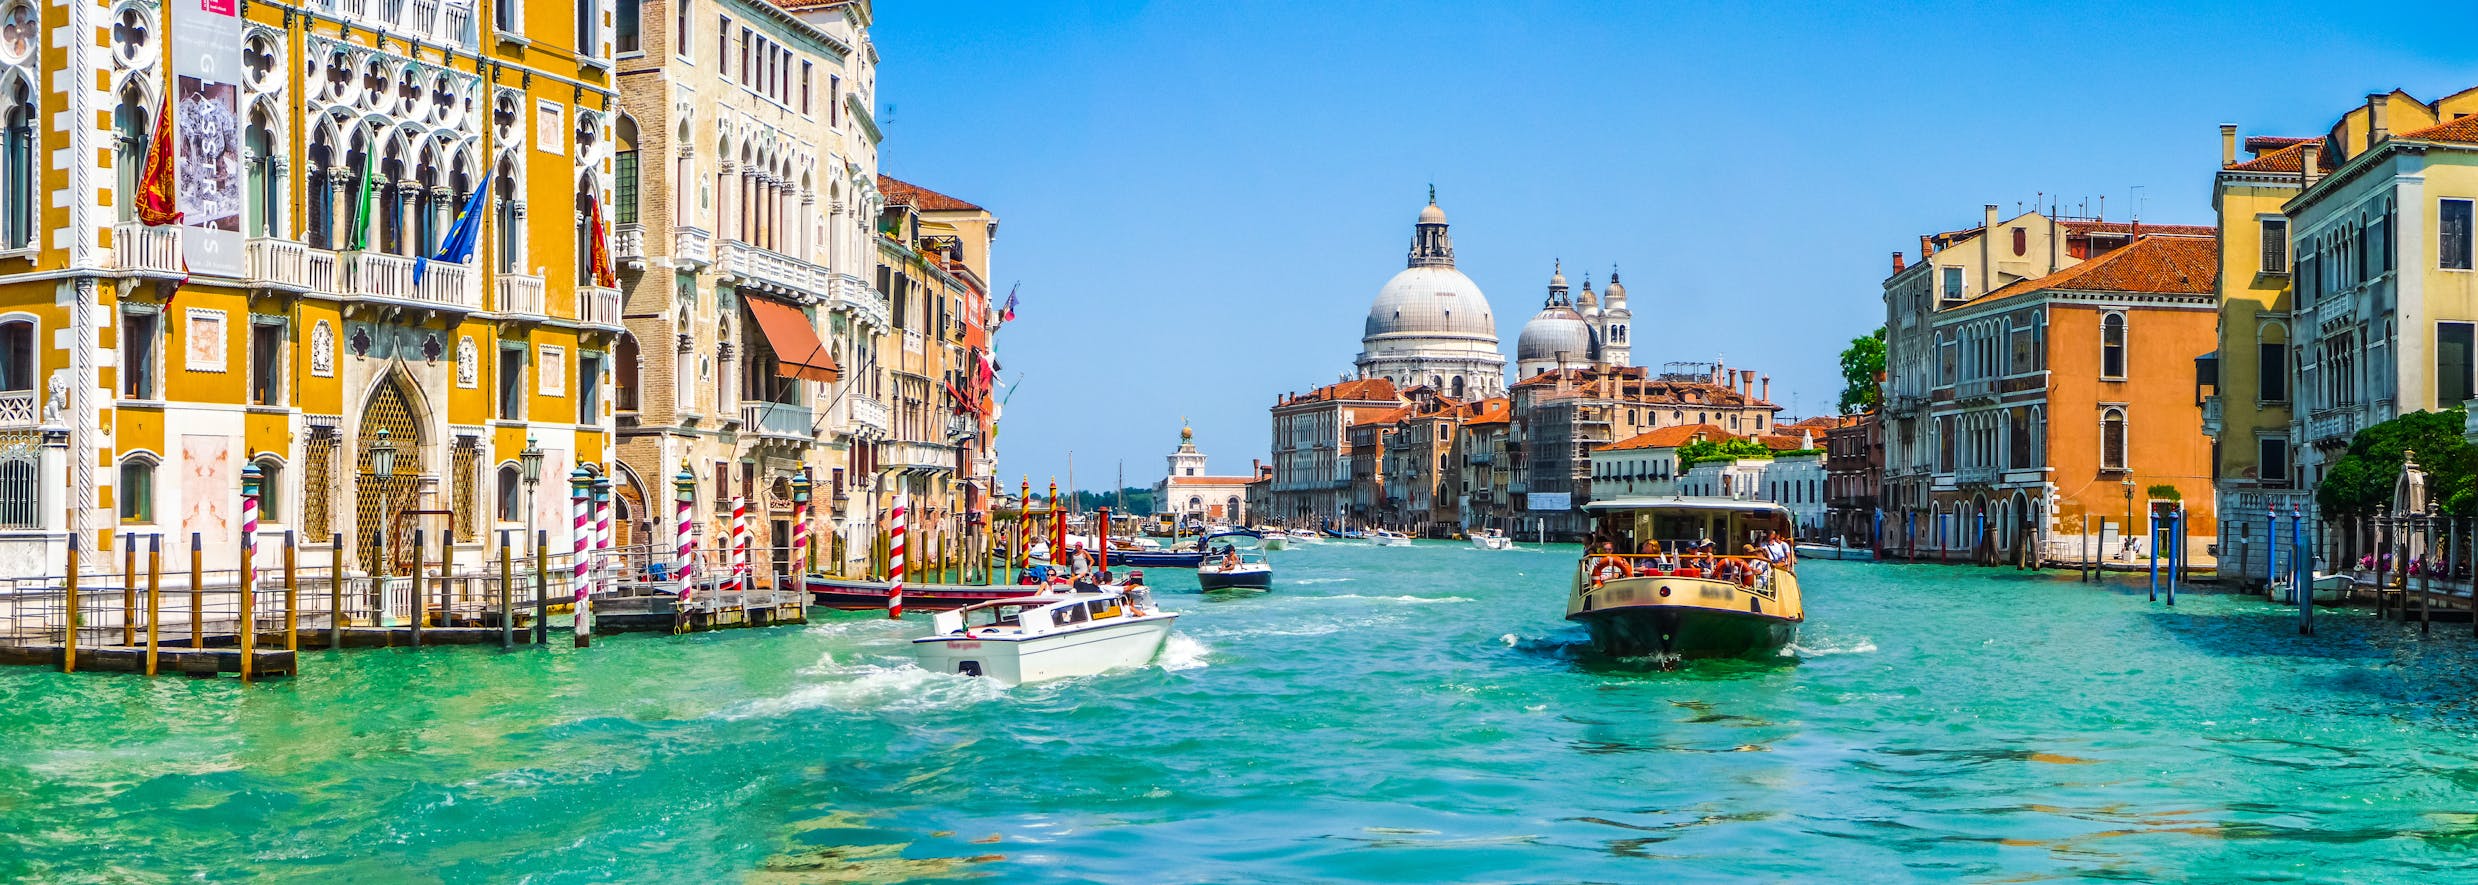 Самый красивый город страны. Венеция столица Италии. Швейцария Венеция.